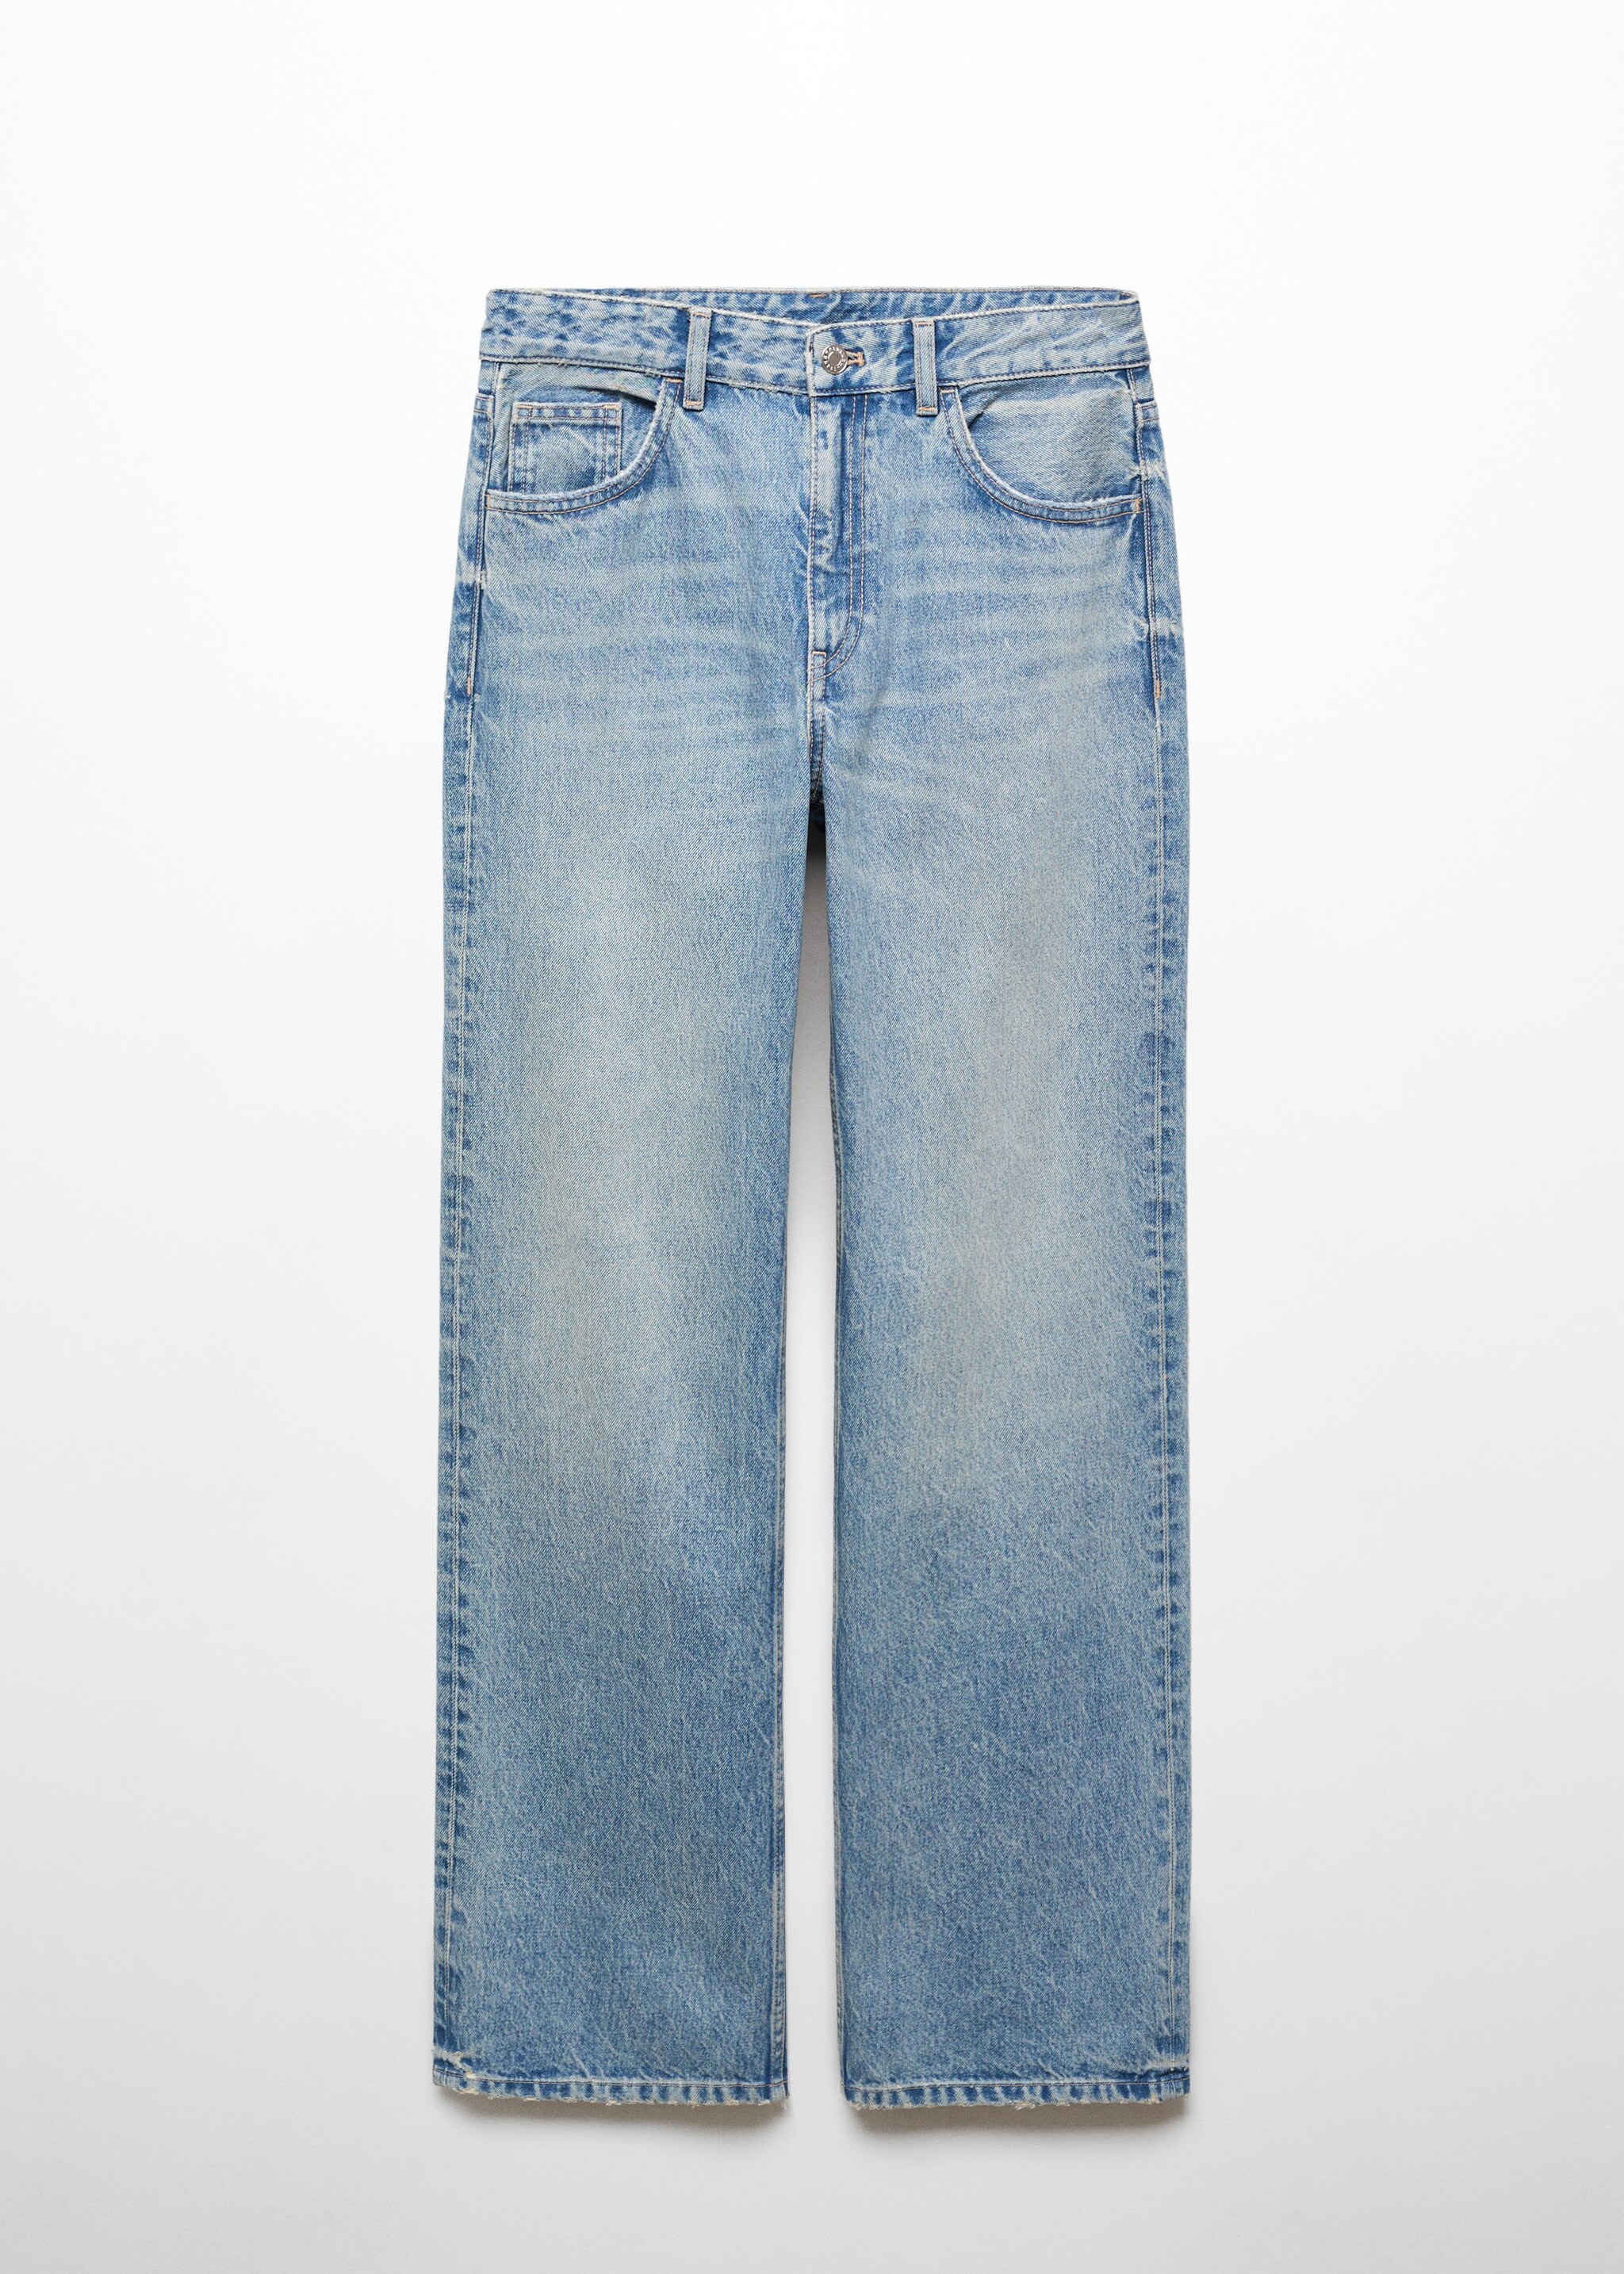 Jeans retos com cintura de altura média - Artigo sem modelo